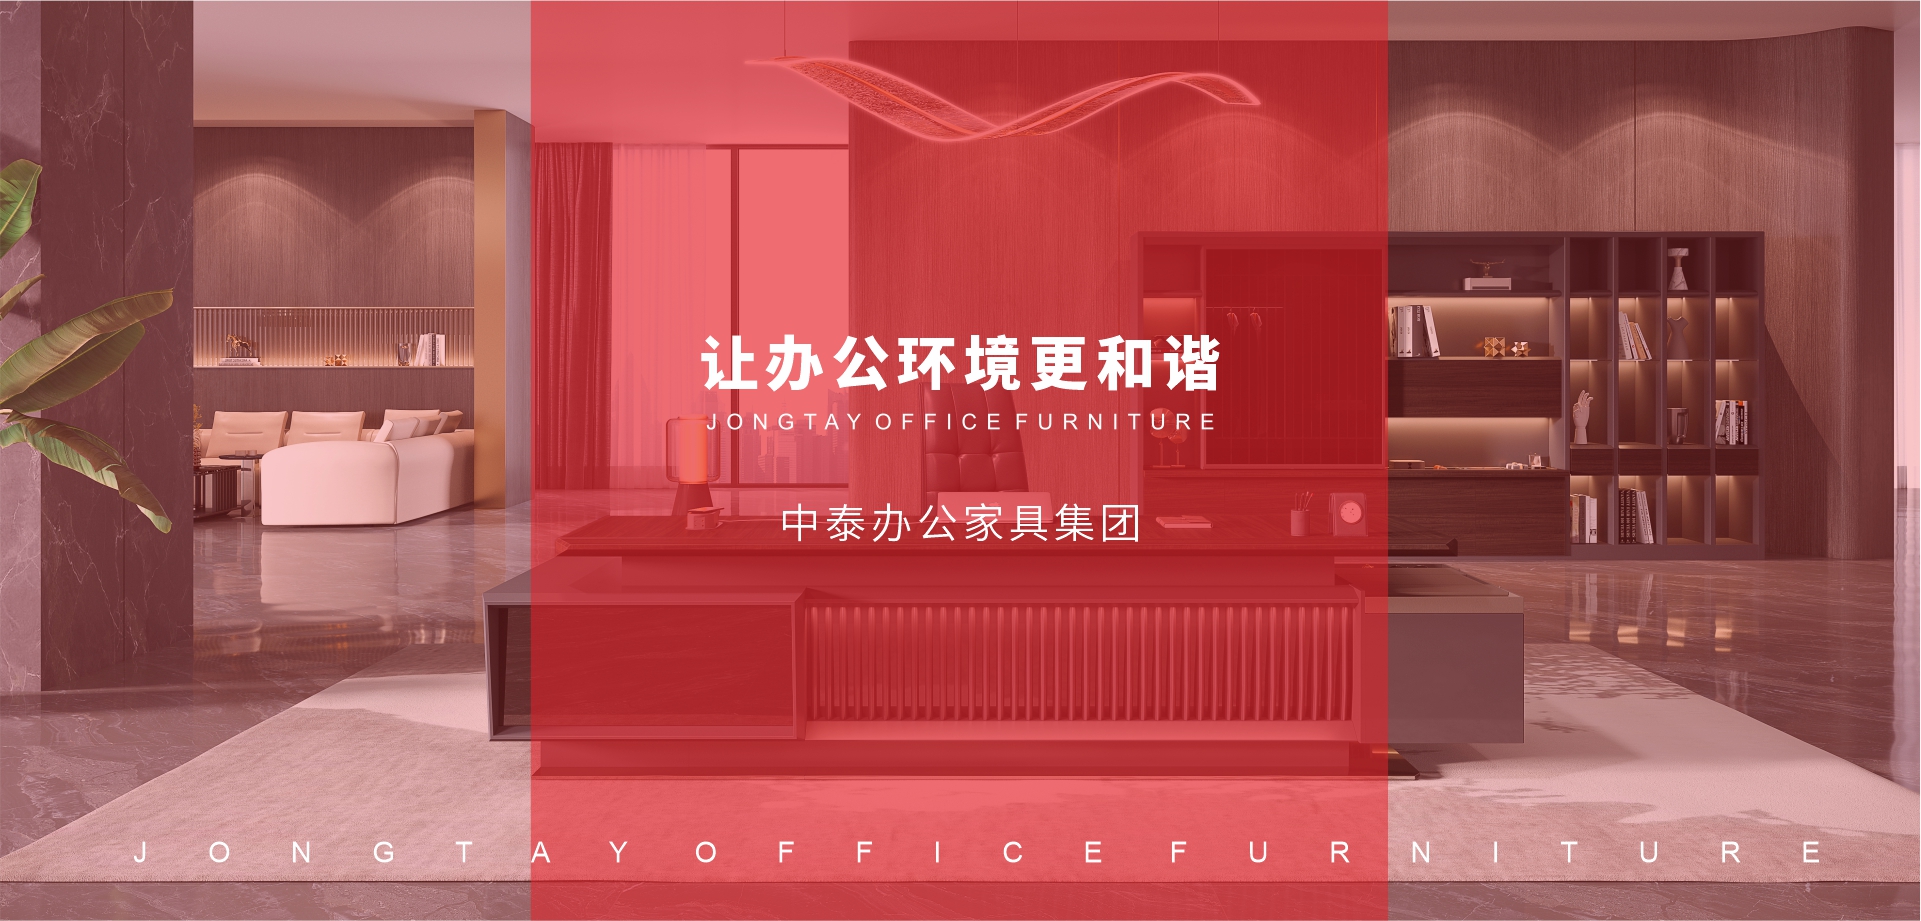 中泰办公家具-以量身定制的产品和服务满足客户需求